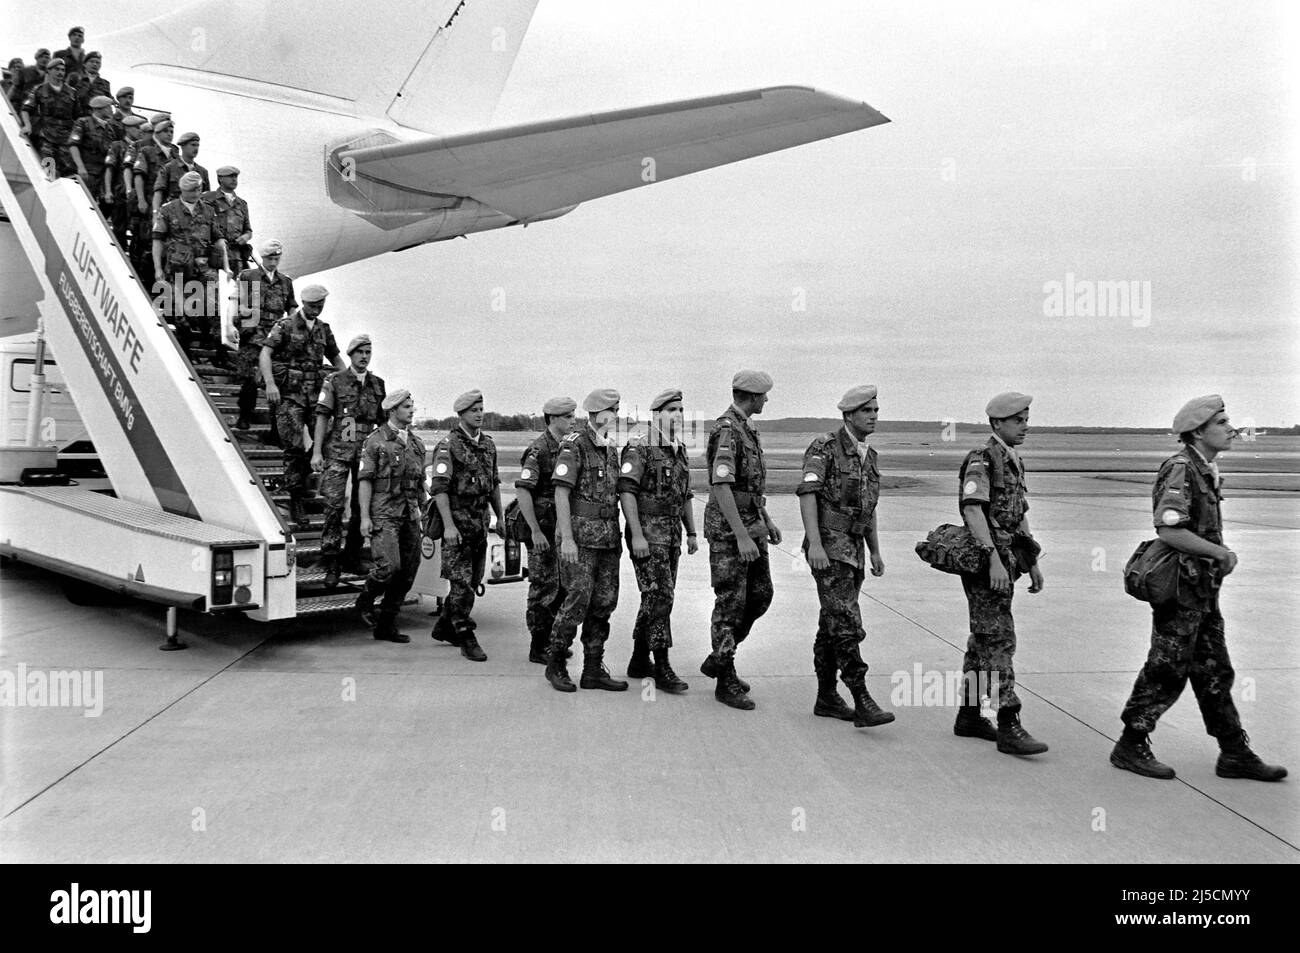 Aéroport de Cologne/Bonn, DEU, 15.03.1994 - les soldats du casque bleu des forces armées allemandes reviennent de Somalie. L'Organisation des Nations Unies a envoyé des soldats à casque bleu en Somalie dans le cadre de la mission ONUSOM II. Le mandat de l'ONUSOM-II a été le premier déploiement étranger armé de la Bundeswehr. Le contingent allemand, ainsi que d'autres troupes, ont mis fin à son déploiement en Somalie en mars 1994. [traduction automatique] Banque D'Images